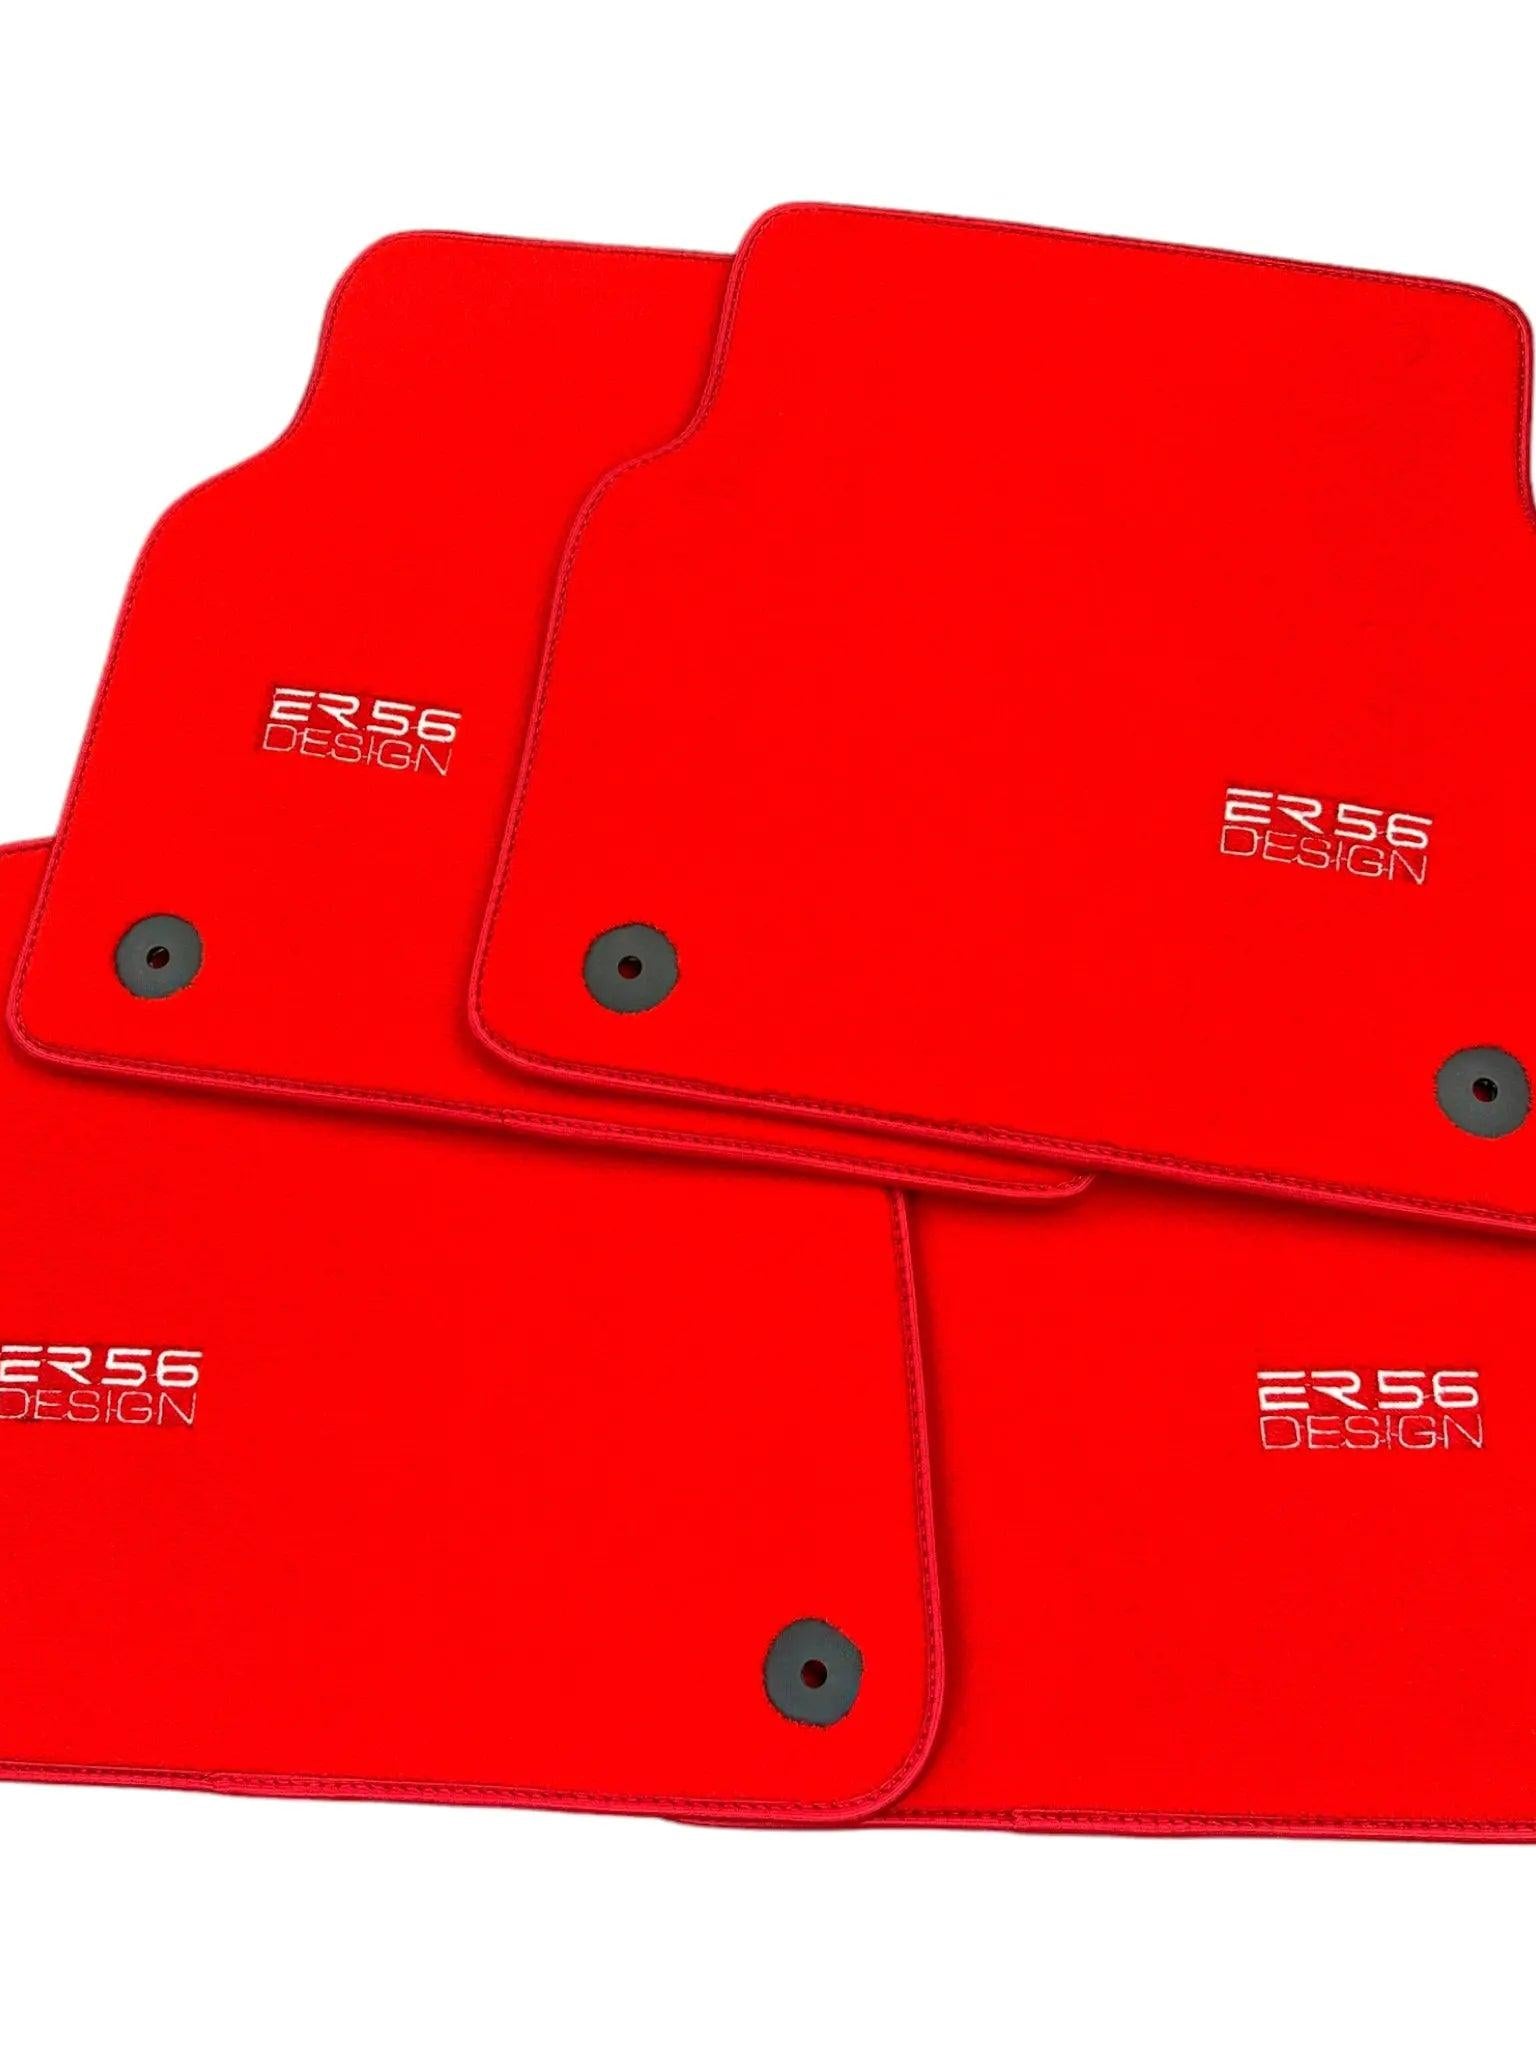 Red Floor Mats for Audi A3 - 3-door Hatchback (2000-2003) | ER56 Design